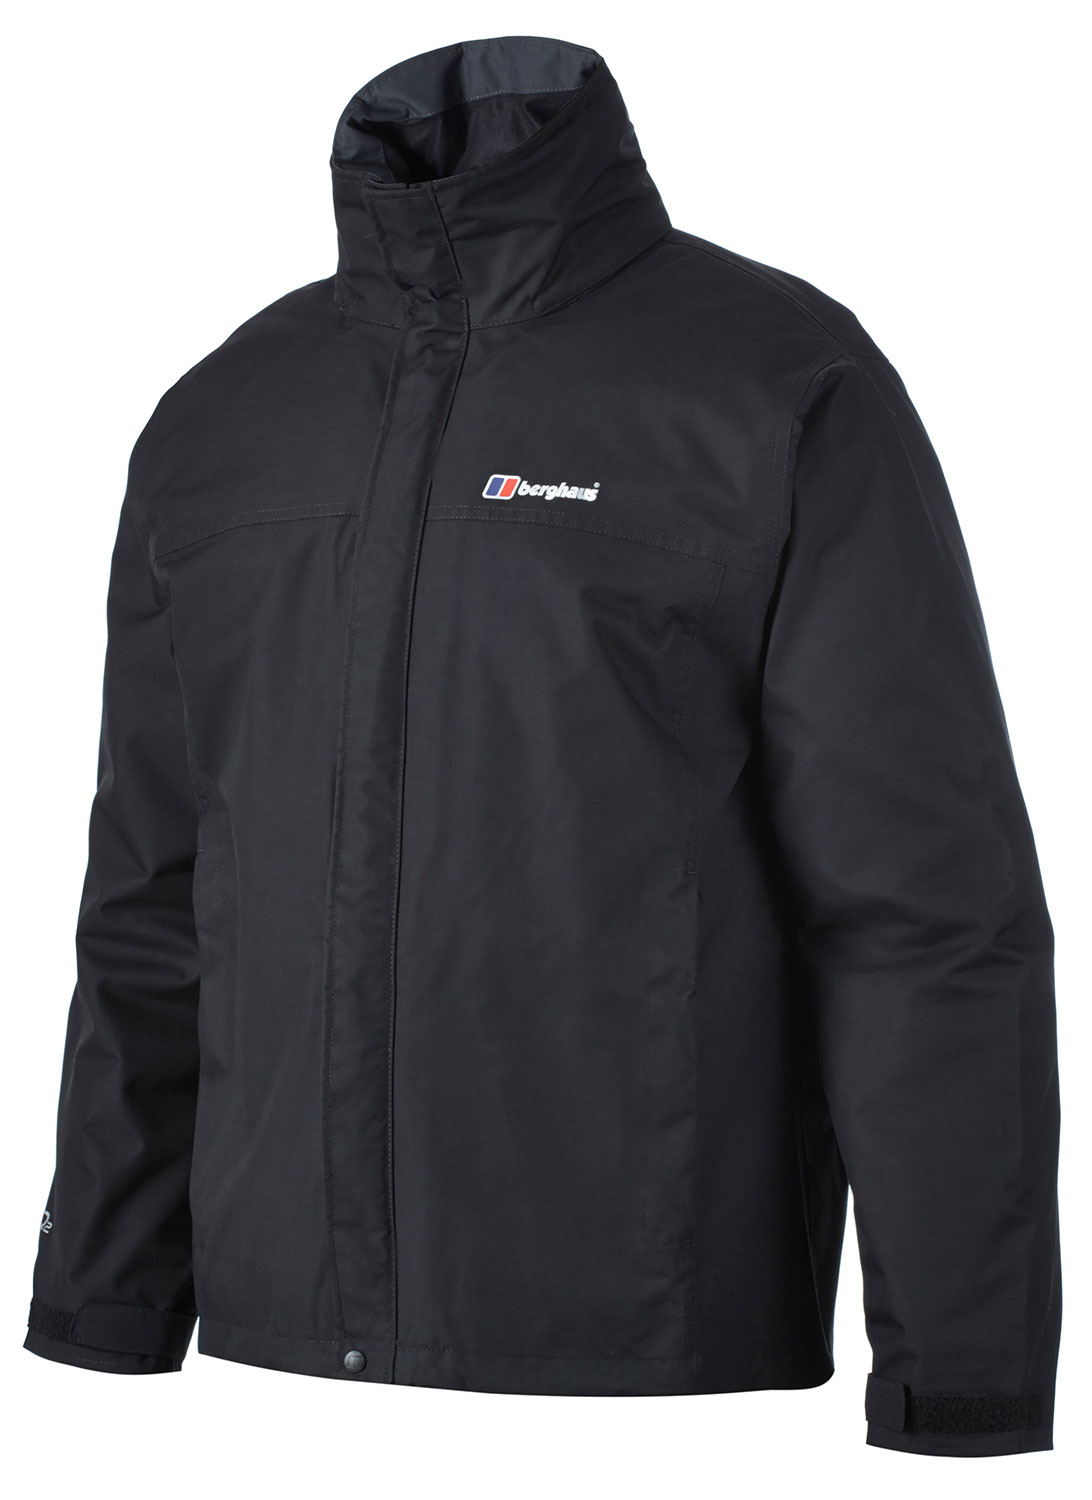 Berghaus RG Alpha Mens Waterproof Jacket for waterproofing and ...